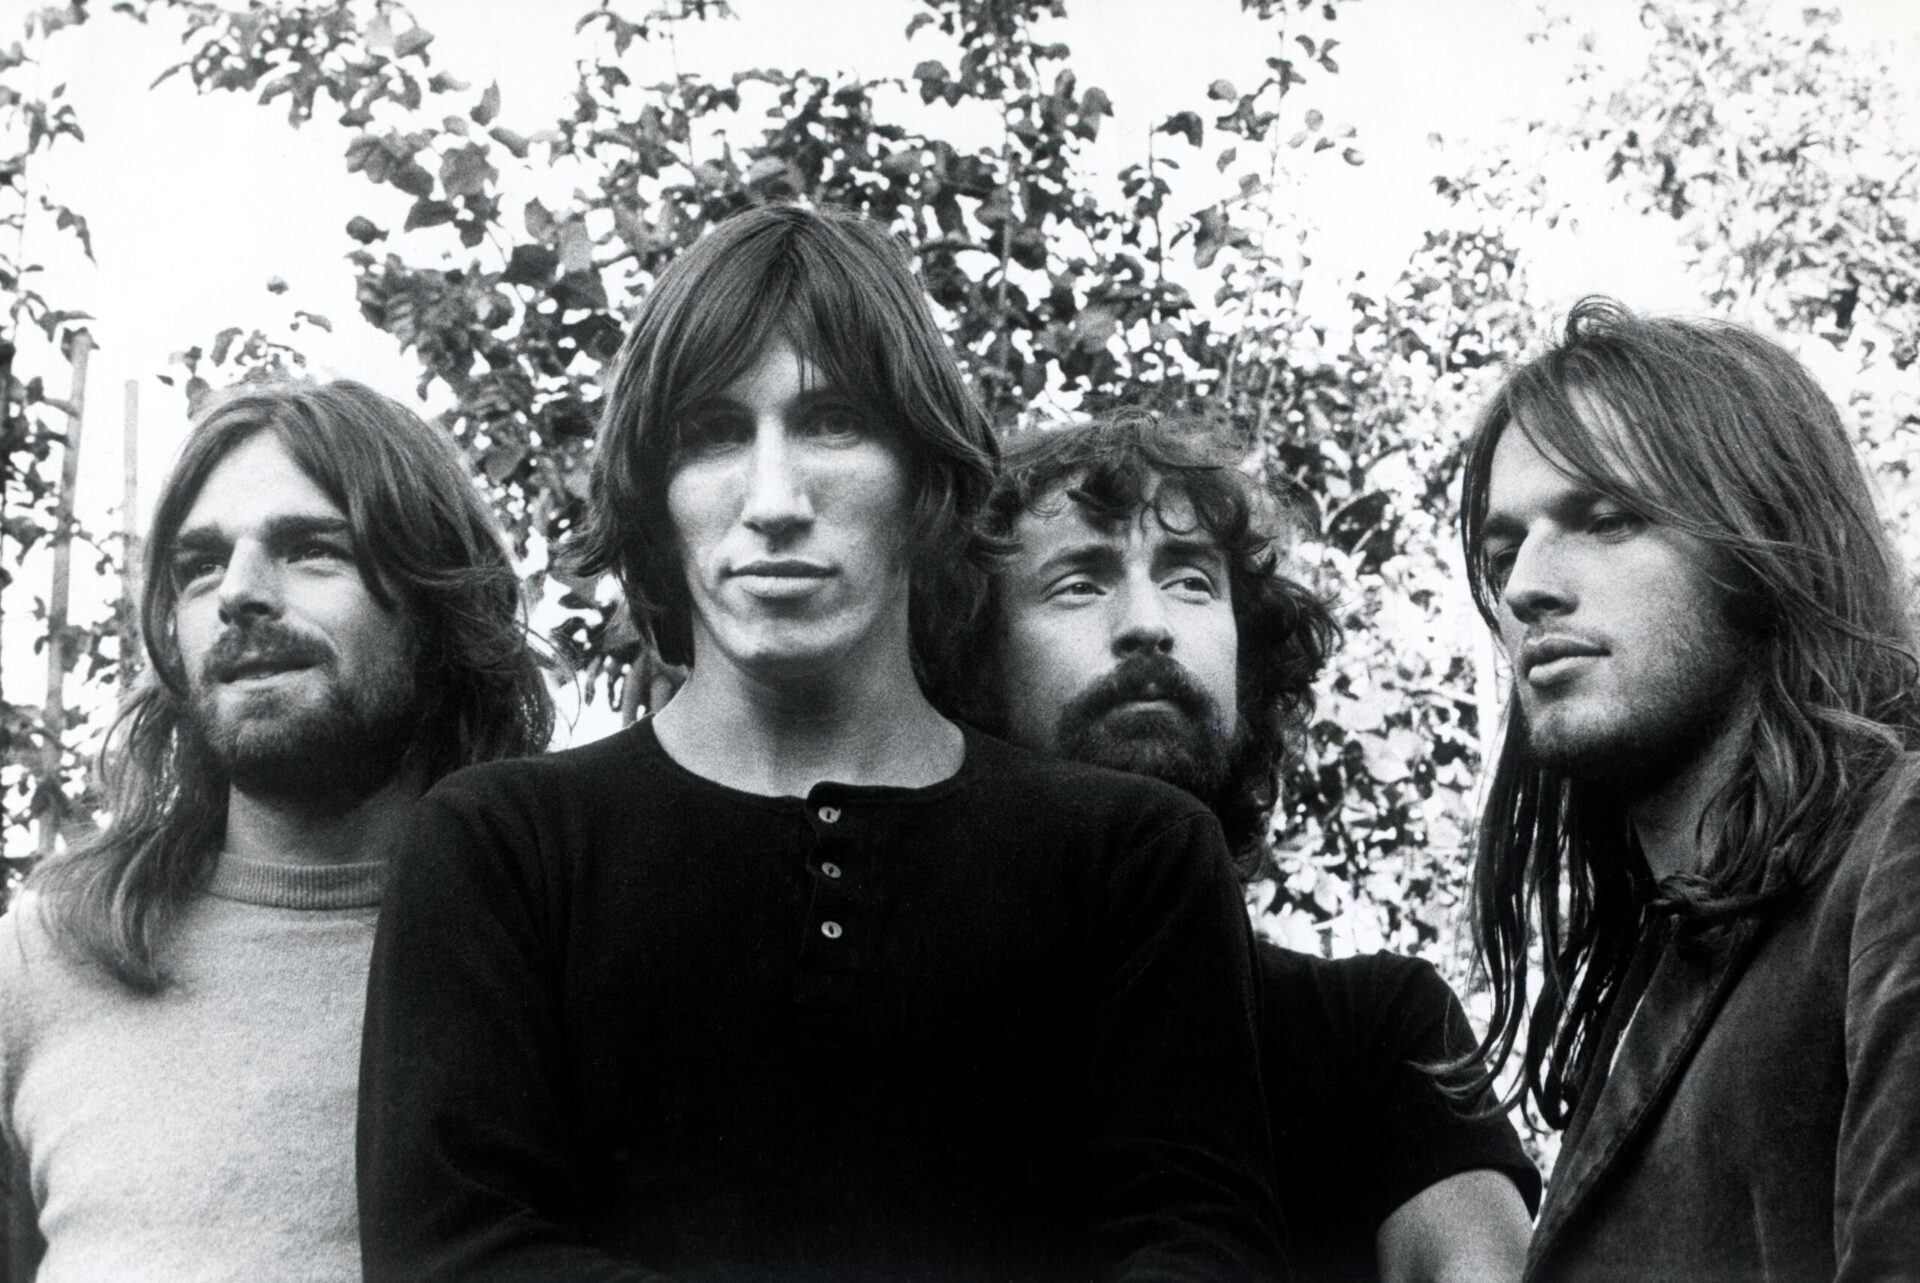 E’ Pink Floyd show a Foiano della Chiana, l’1 novembre serata omaggio con tribute band